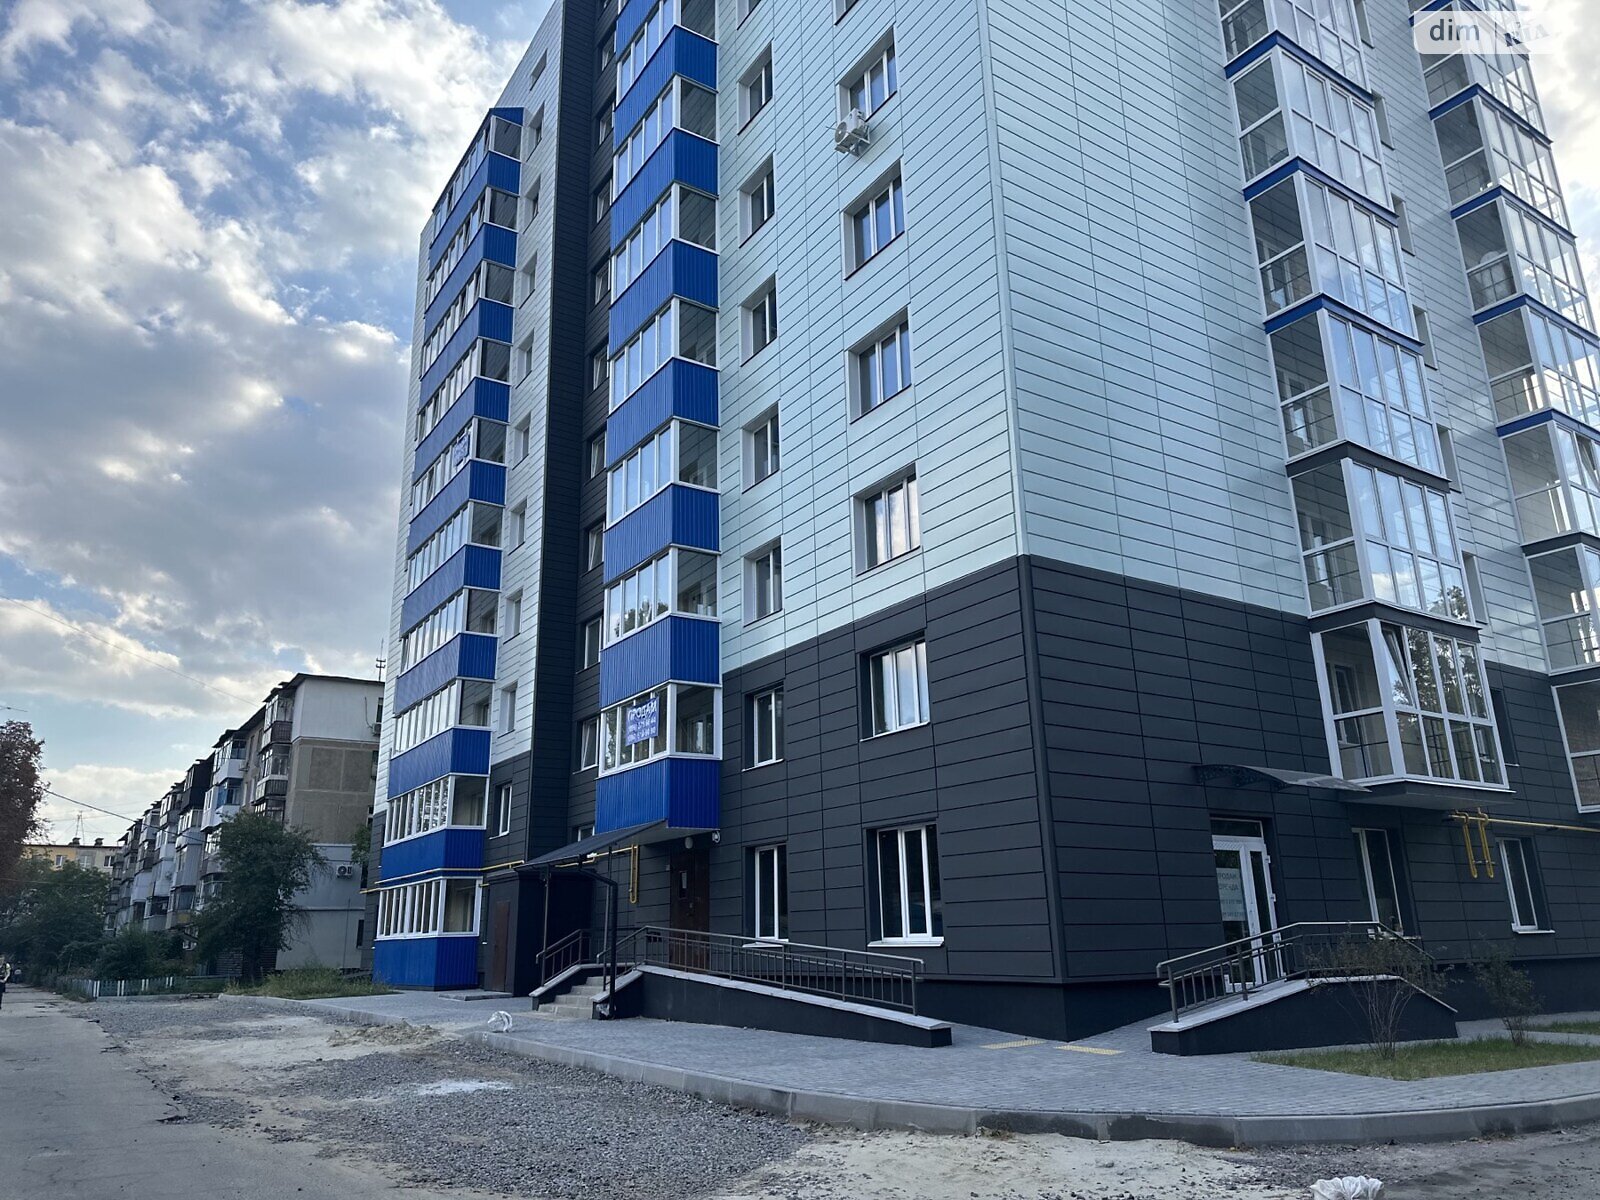 Продажа трехкомнатной квартиры в Полтаве, на ул. Великотырновская 4А, район Алмазный фото 1